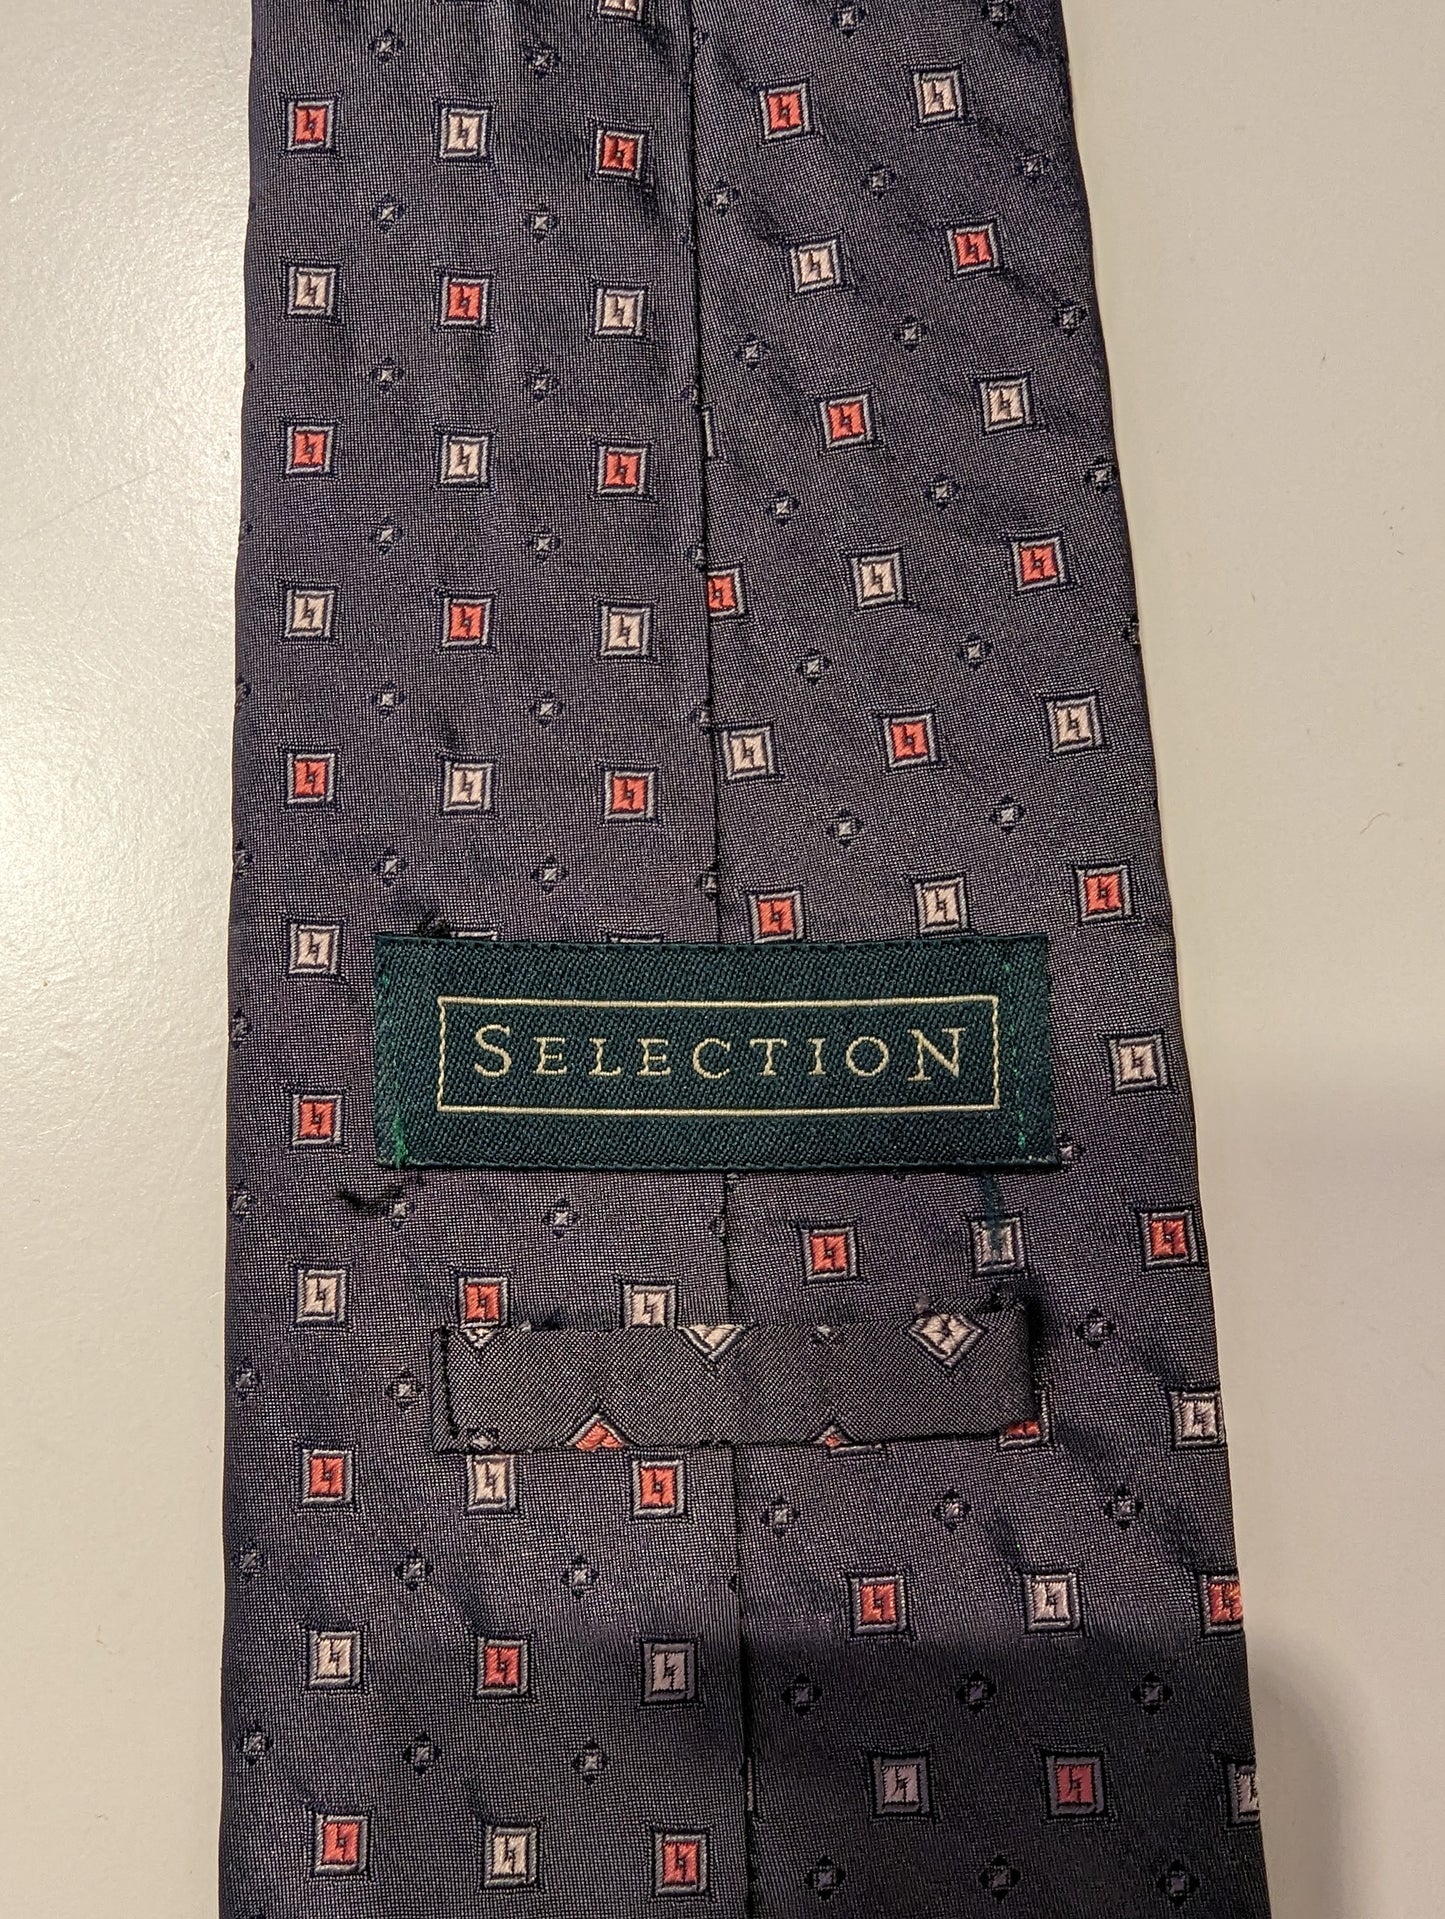 Vintage selection silk tie. Gray shiny motif.